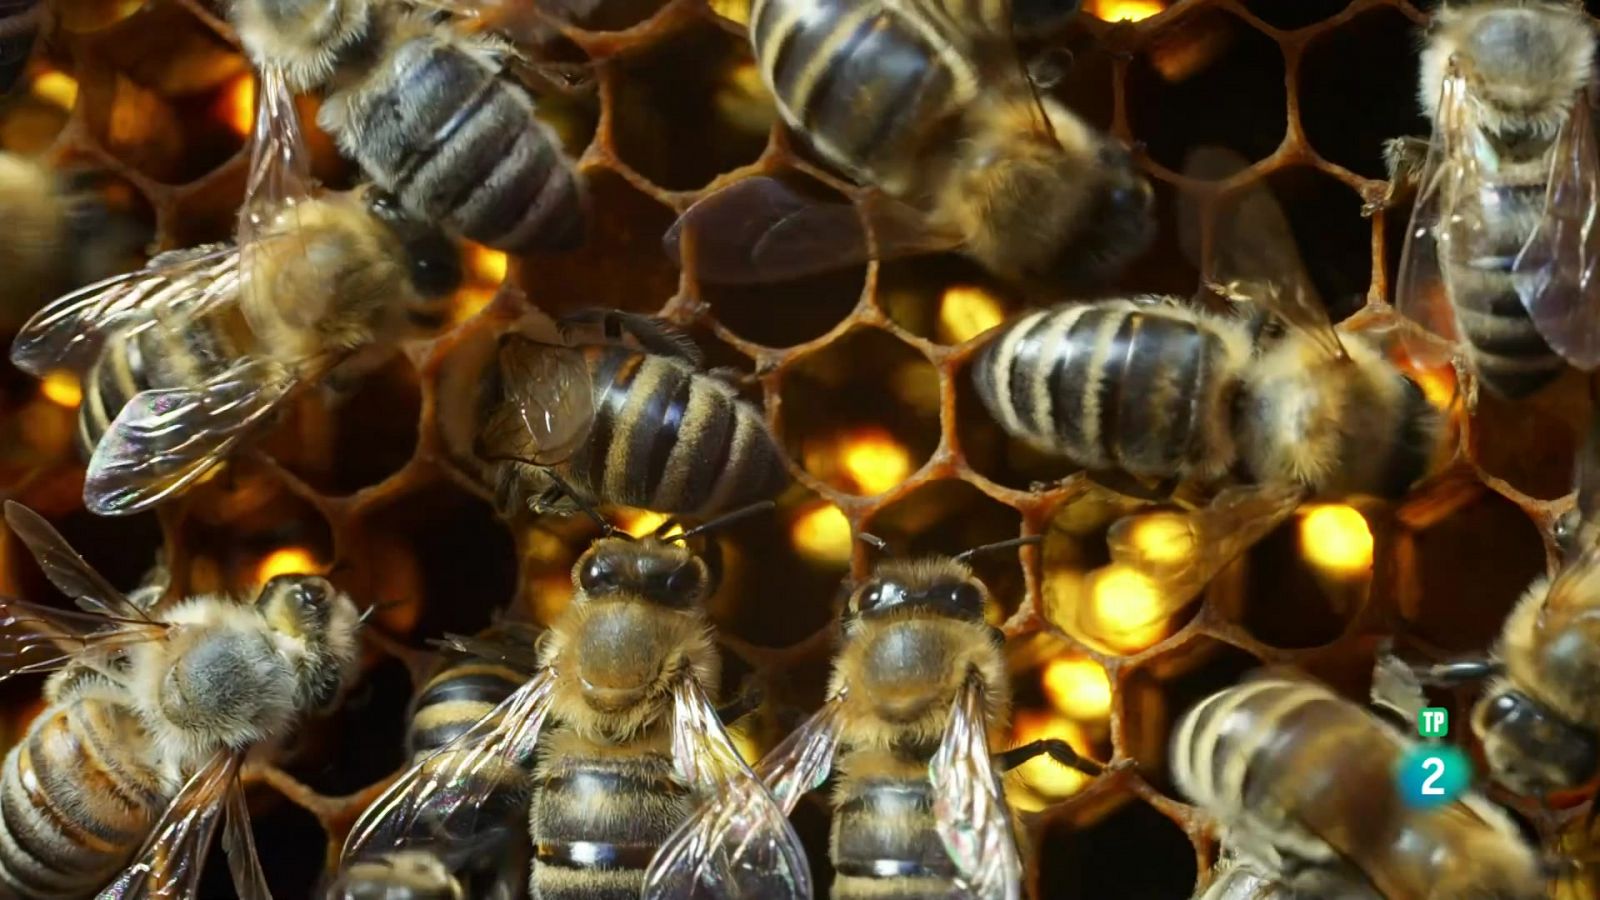 Filles del sol: Les abelles silvestres | Grans Documentals